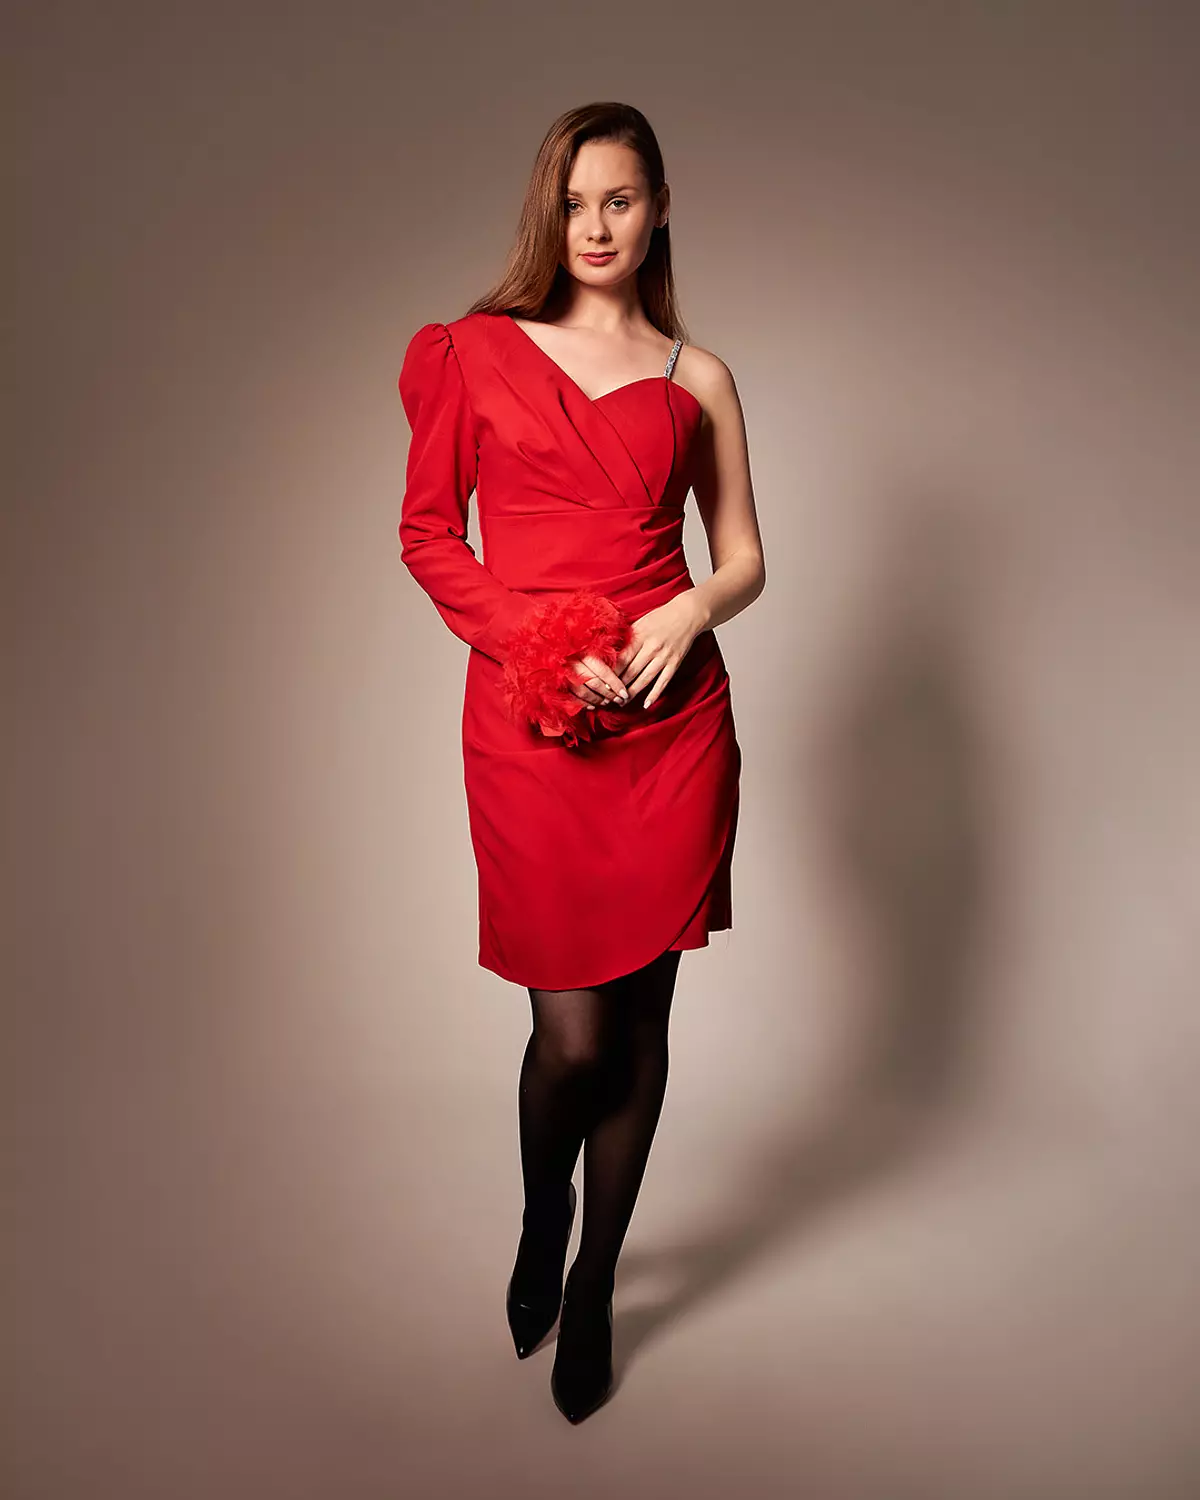 Scarlet Siren Dress hover image